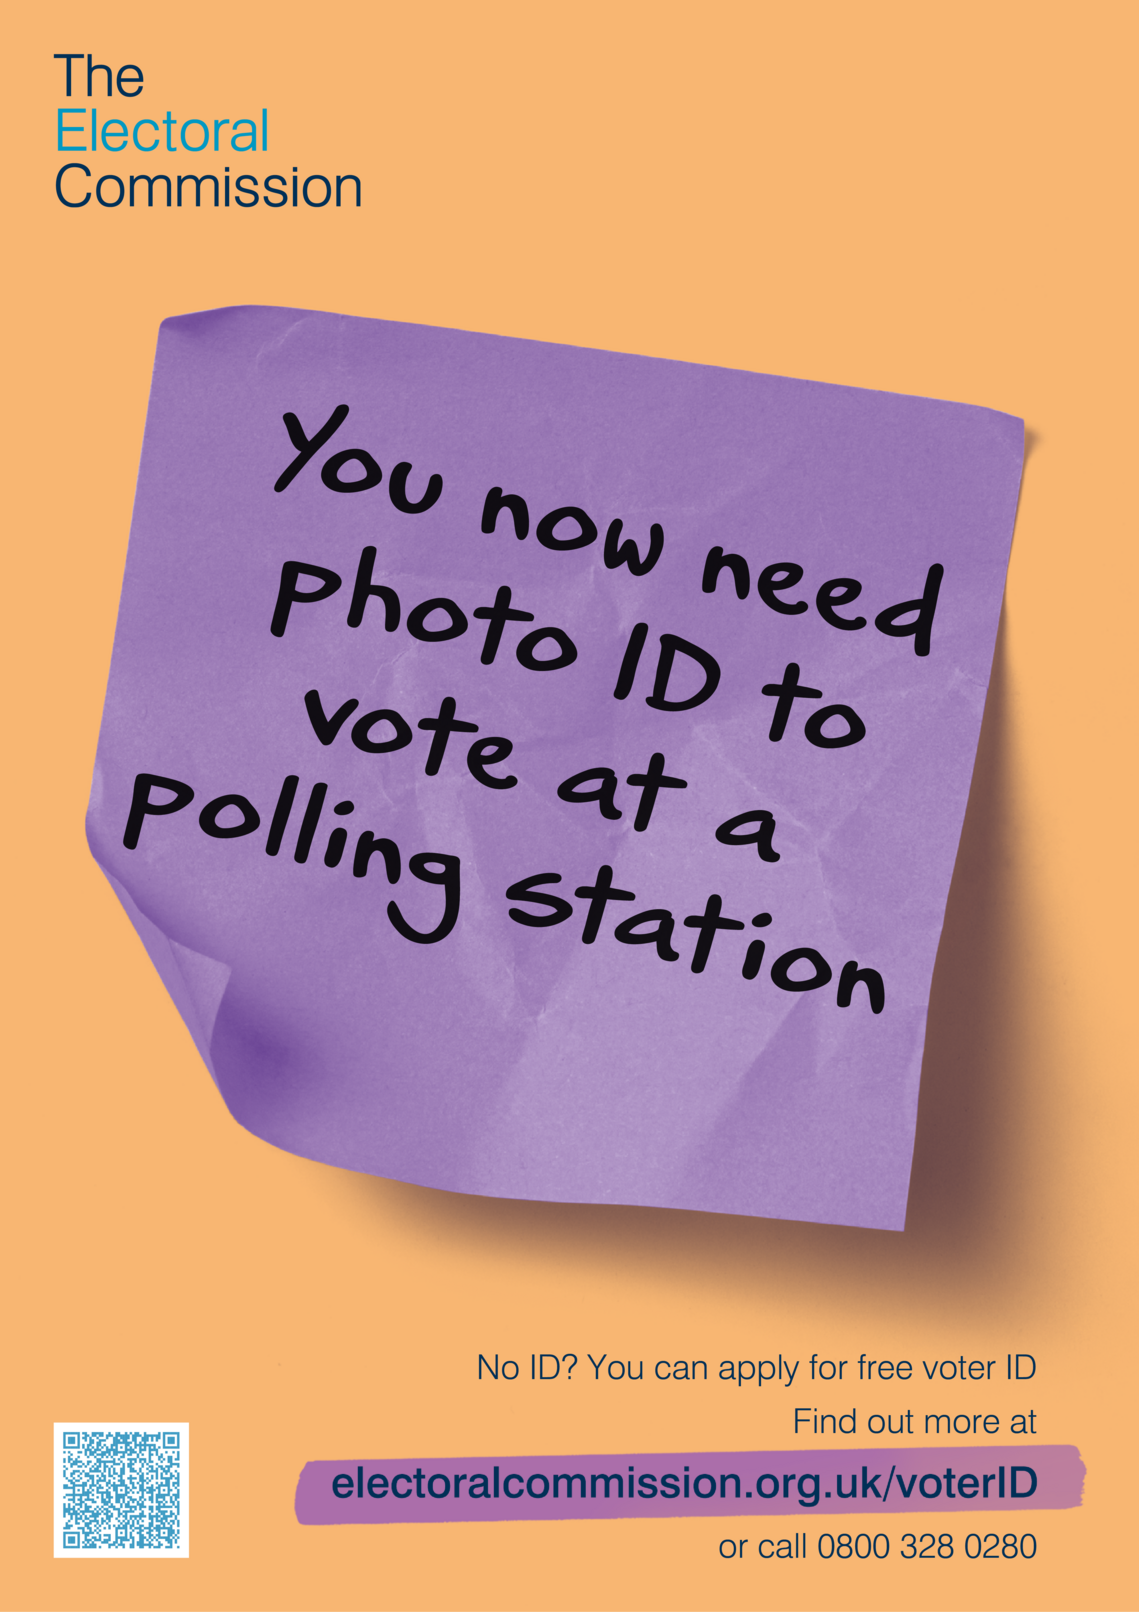 Voter ID Needed